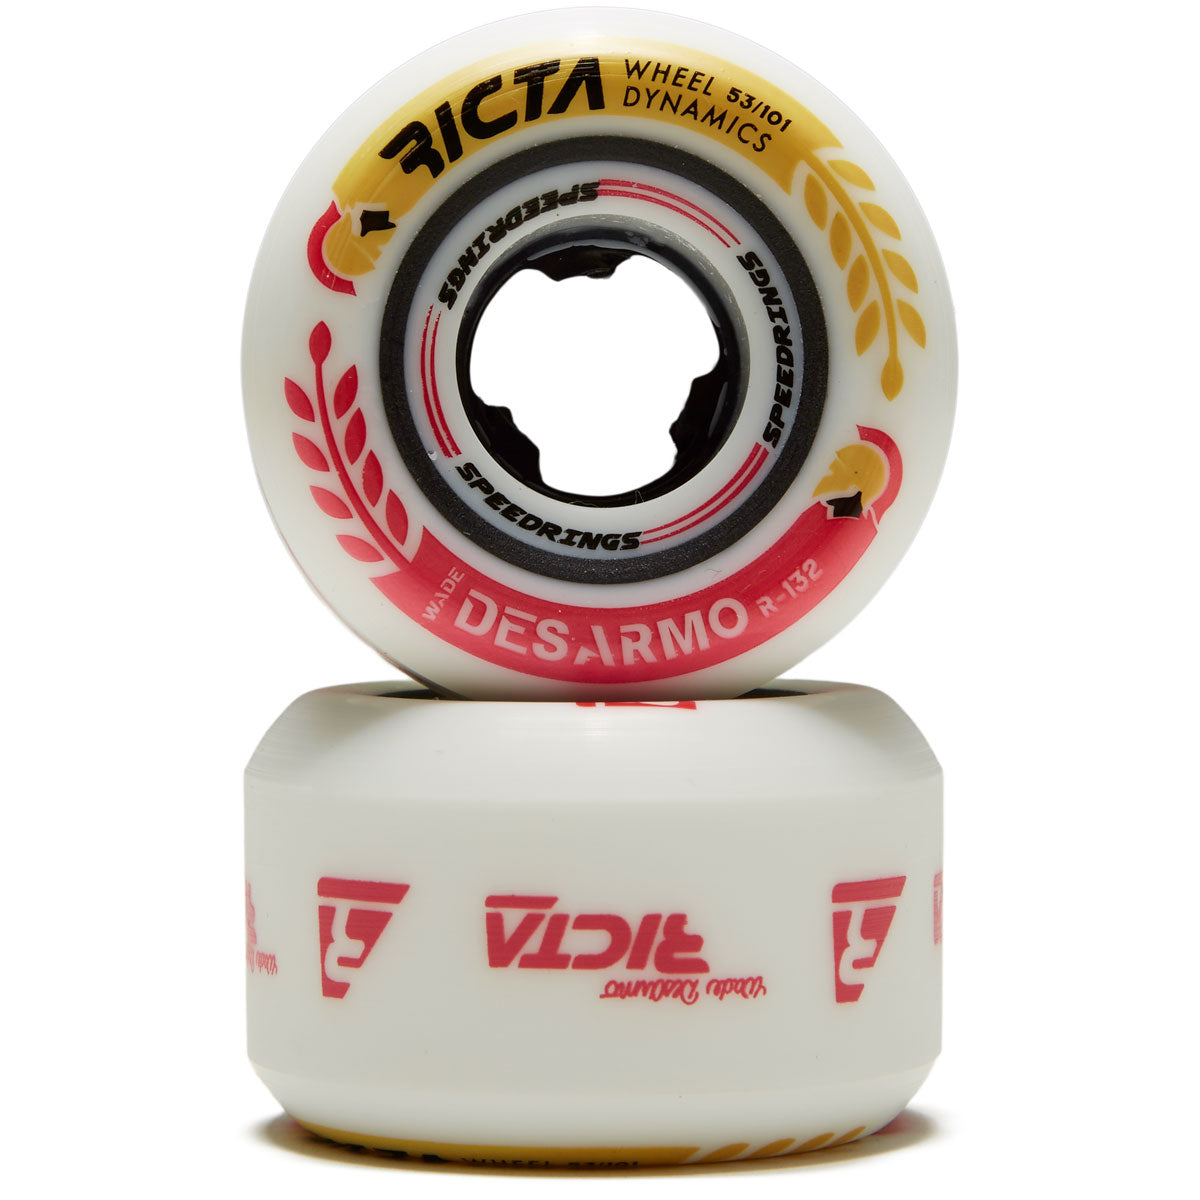 Ricta Desarmo Speedrings Wide 101a Skateboard Wheels - White - 53mm image 2